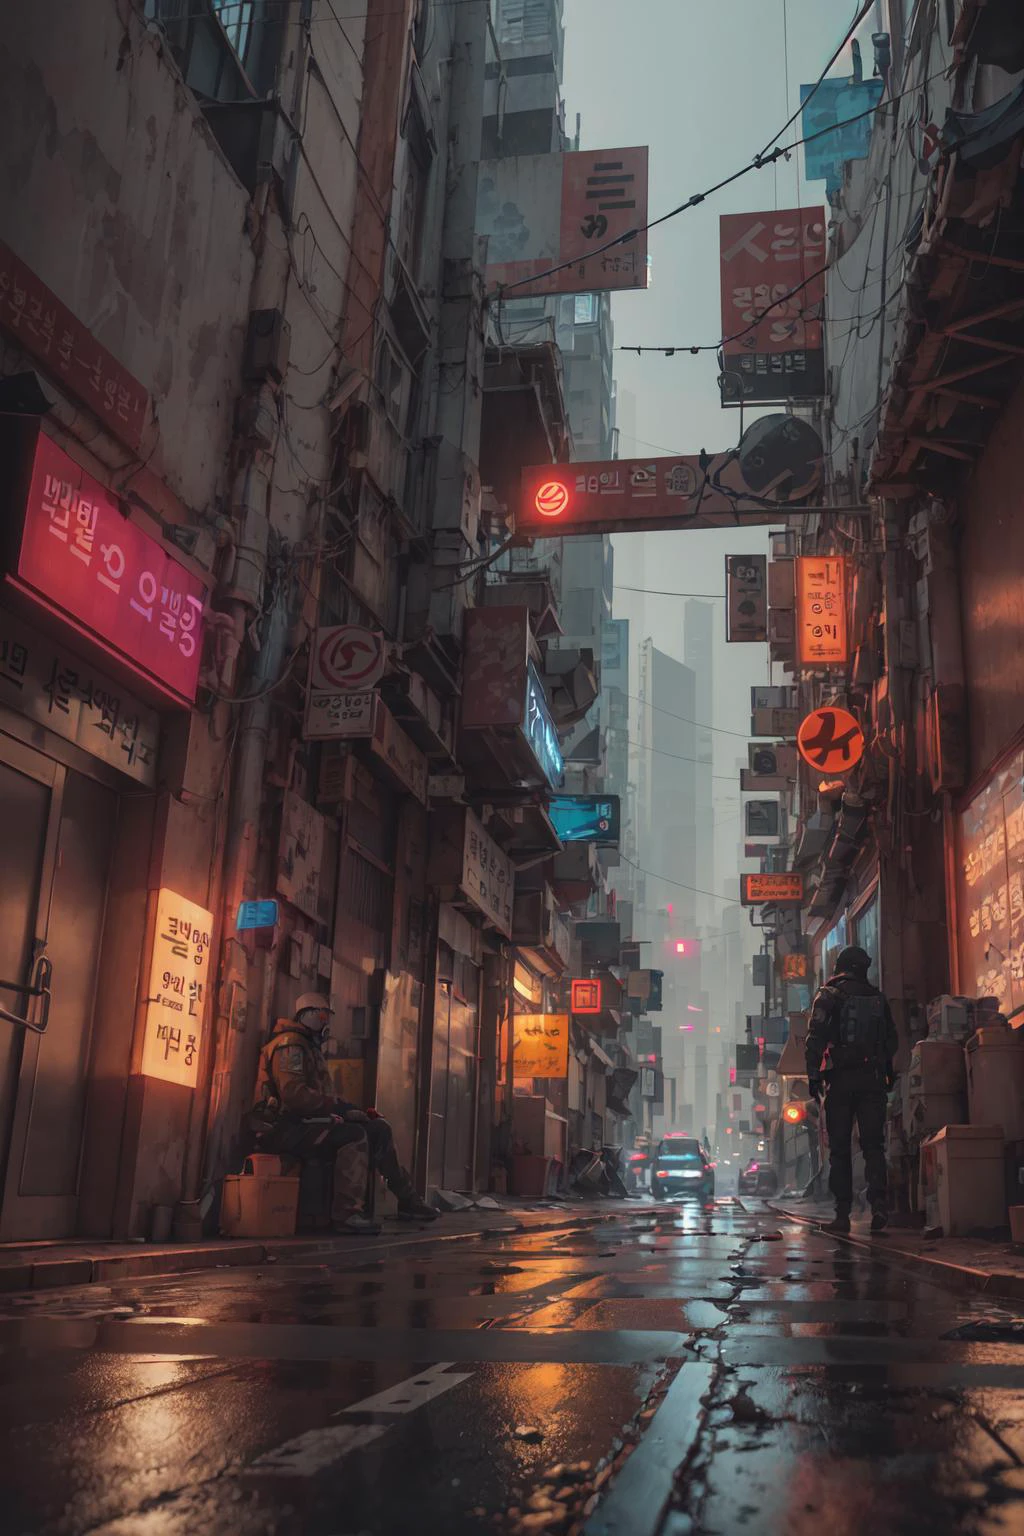  حليف في سيول, مدينة Cyberpunk من فيلم الخيال العلمي, شارع فارغ, الكورية, الكورية signs, معقد, مفرط التفصيل, حقيقي, ultra-حقيقي, جودة عالية, تفاصيل فائقة, تفاصيل مجنونة, واقعية الصورة, 8 كيلو